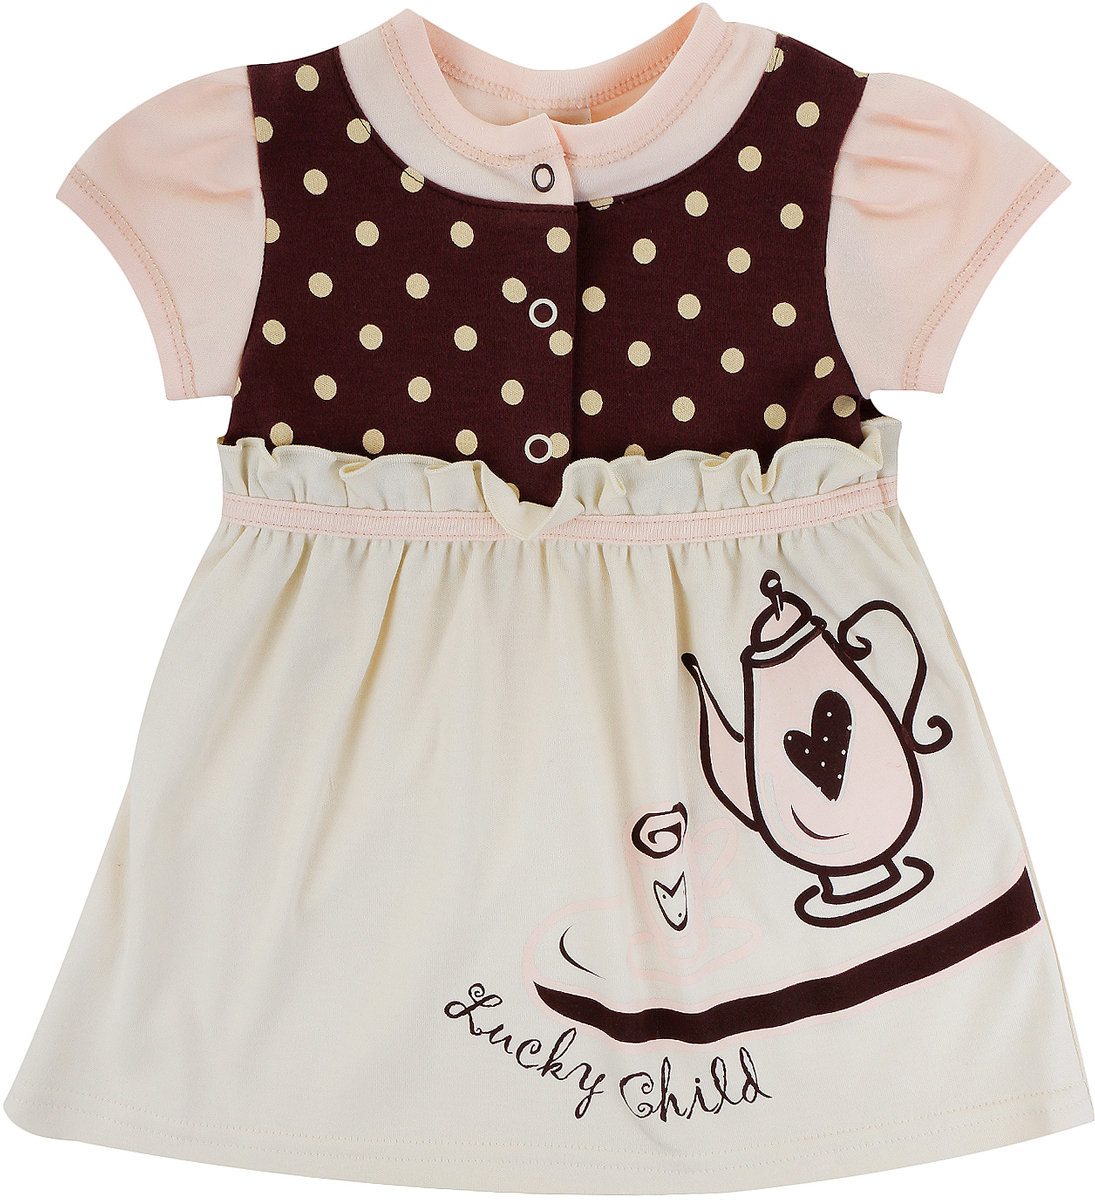 Платье для девочки Lucky Child Летнее кафе, цвет: бежевый, коричневый. 23-62. Размер 86/92